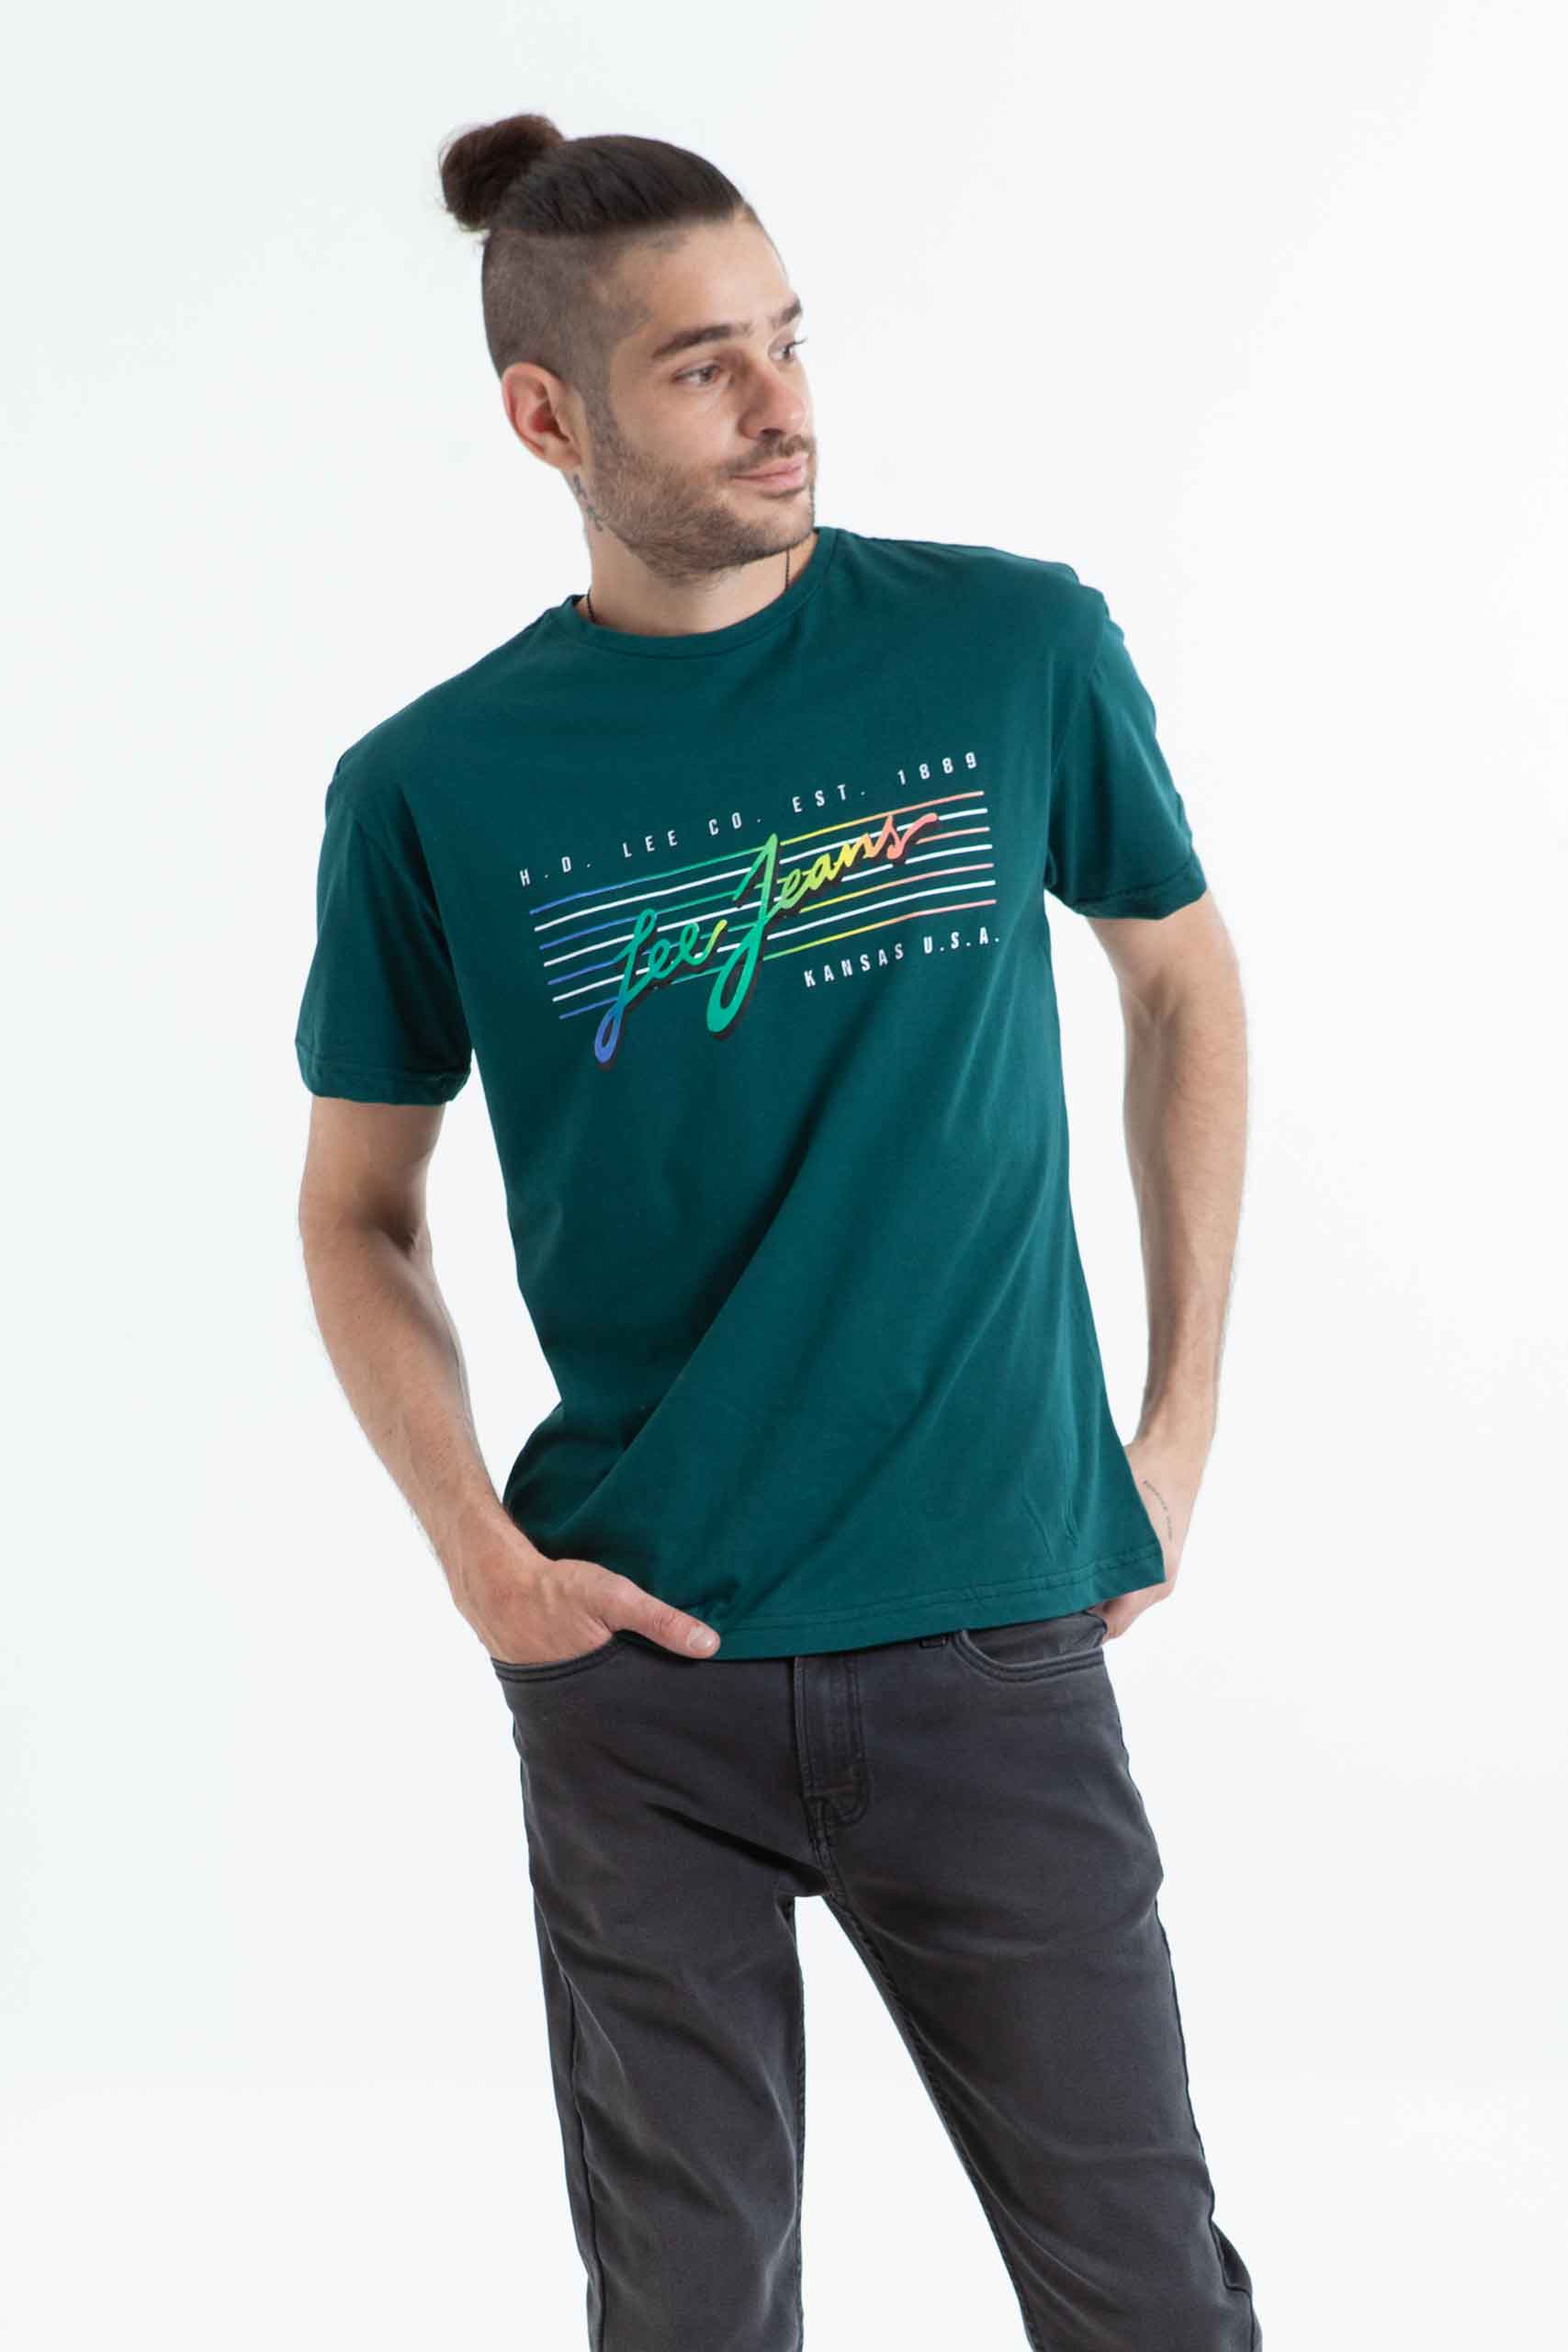 Vista frontal de camiseta de color verde con estampado marca lee